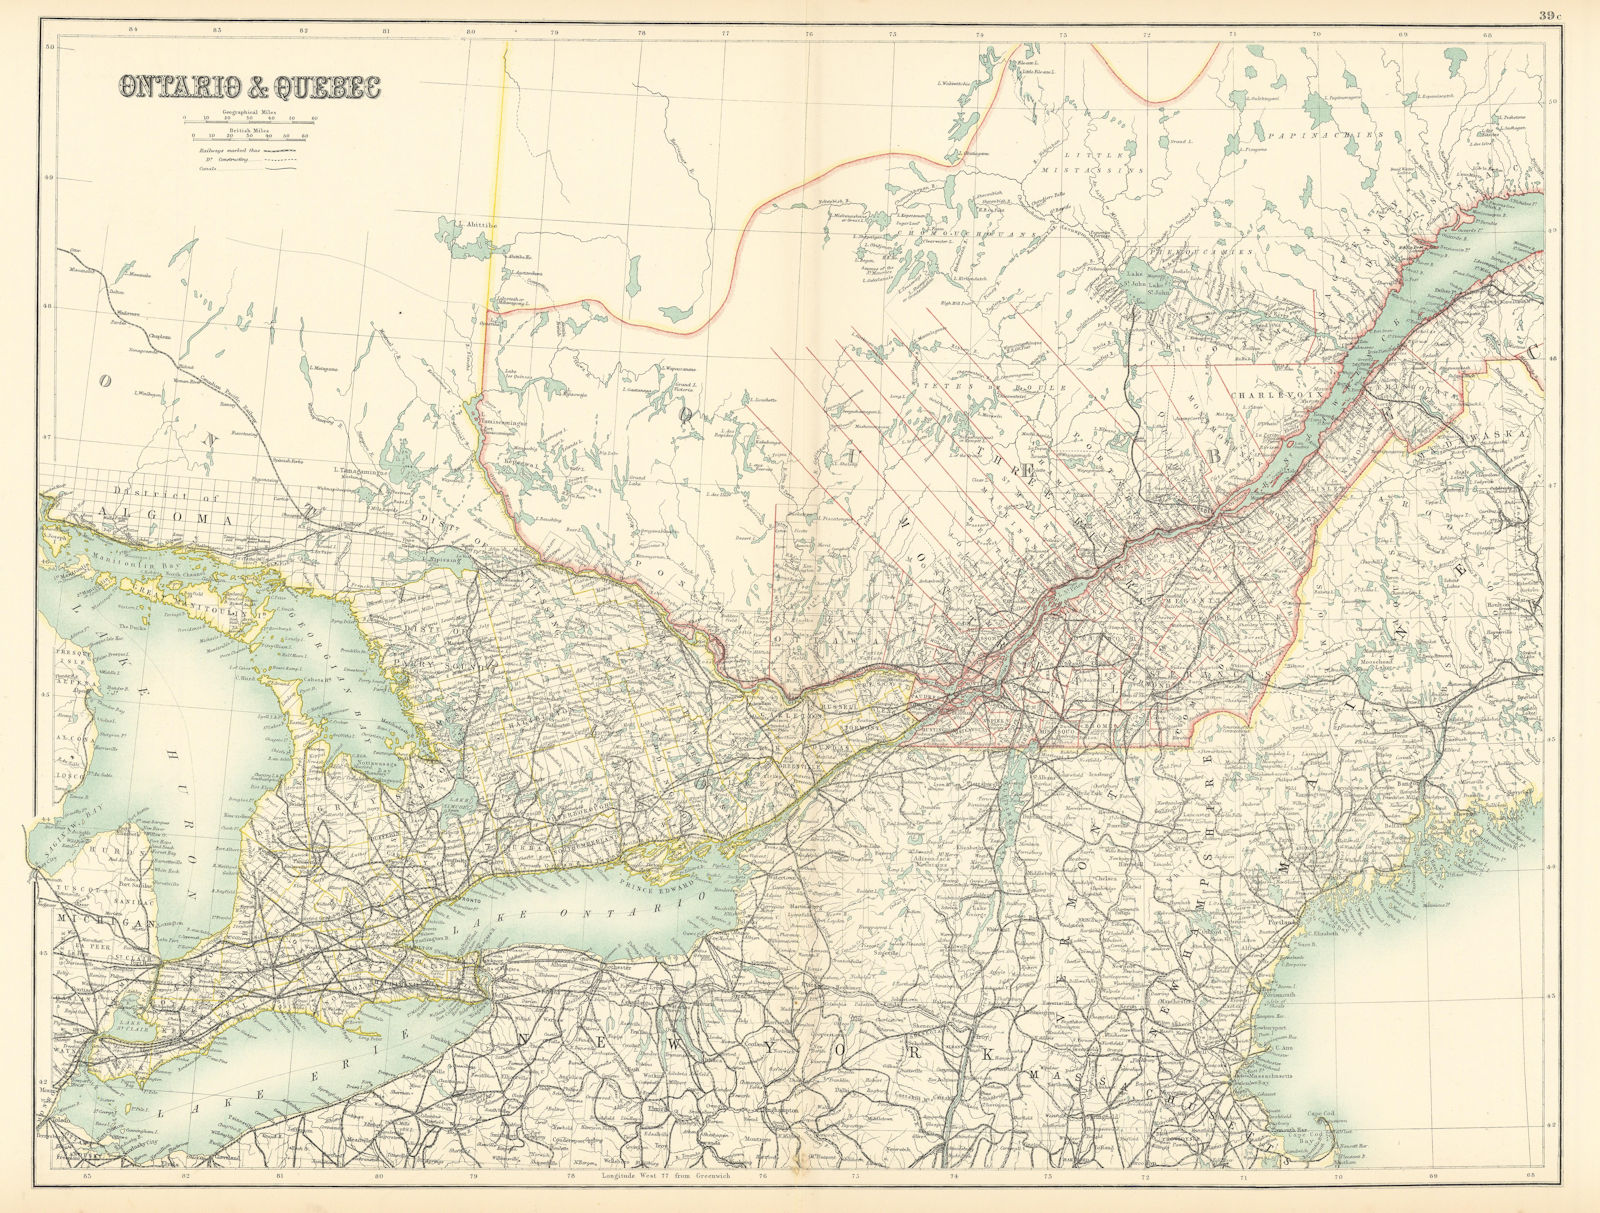 Ontario and Quebec. Great Lakes Huron & Erie. Railways. BARTHOLOMEW 1898 map